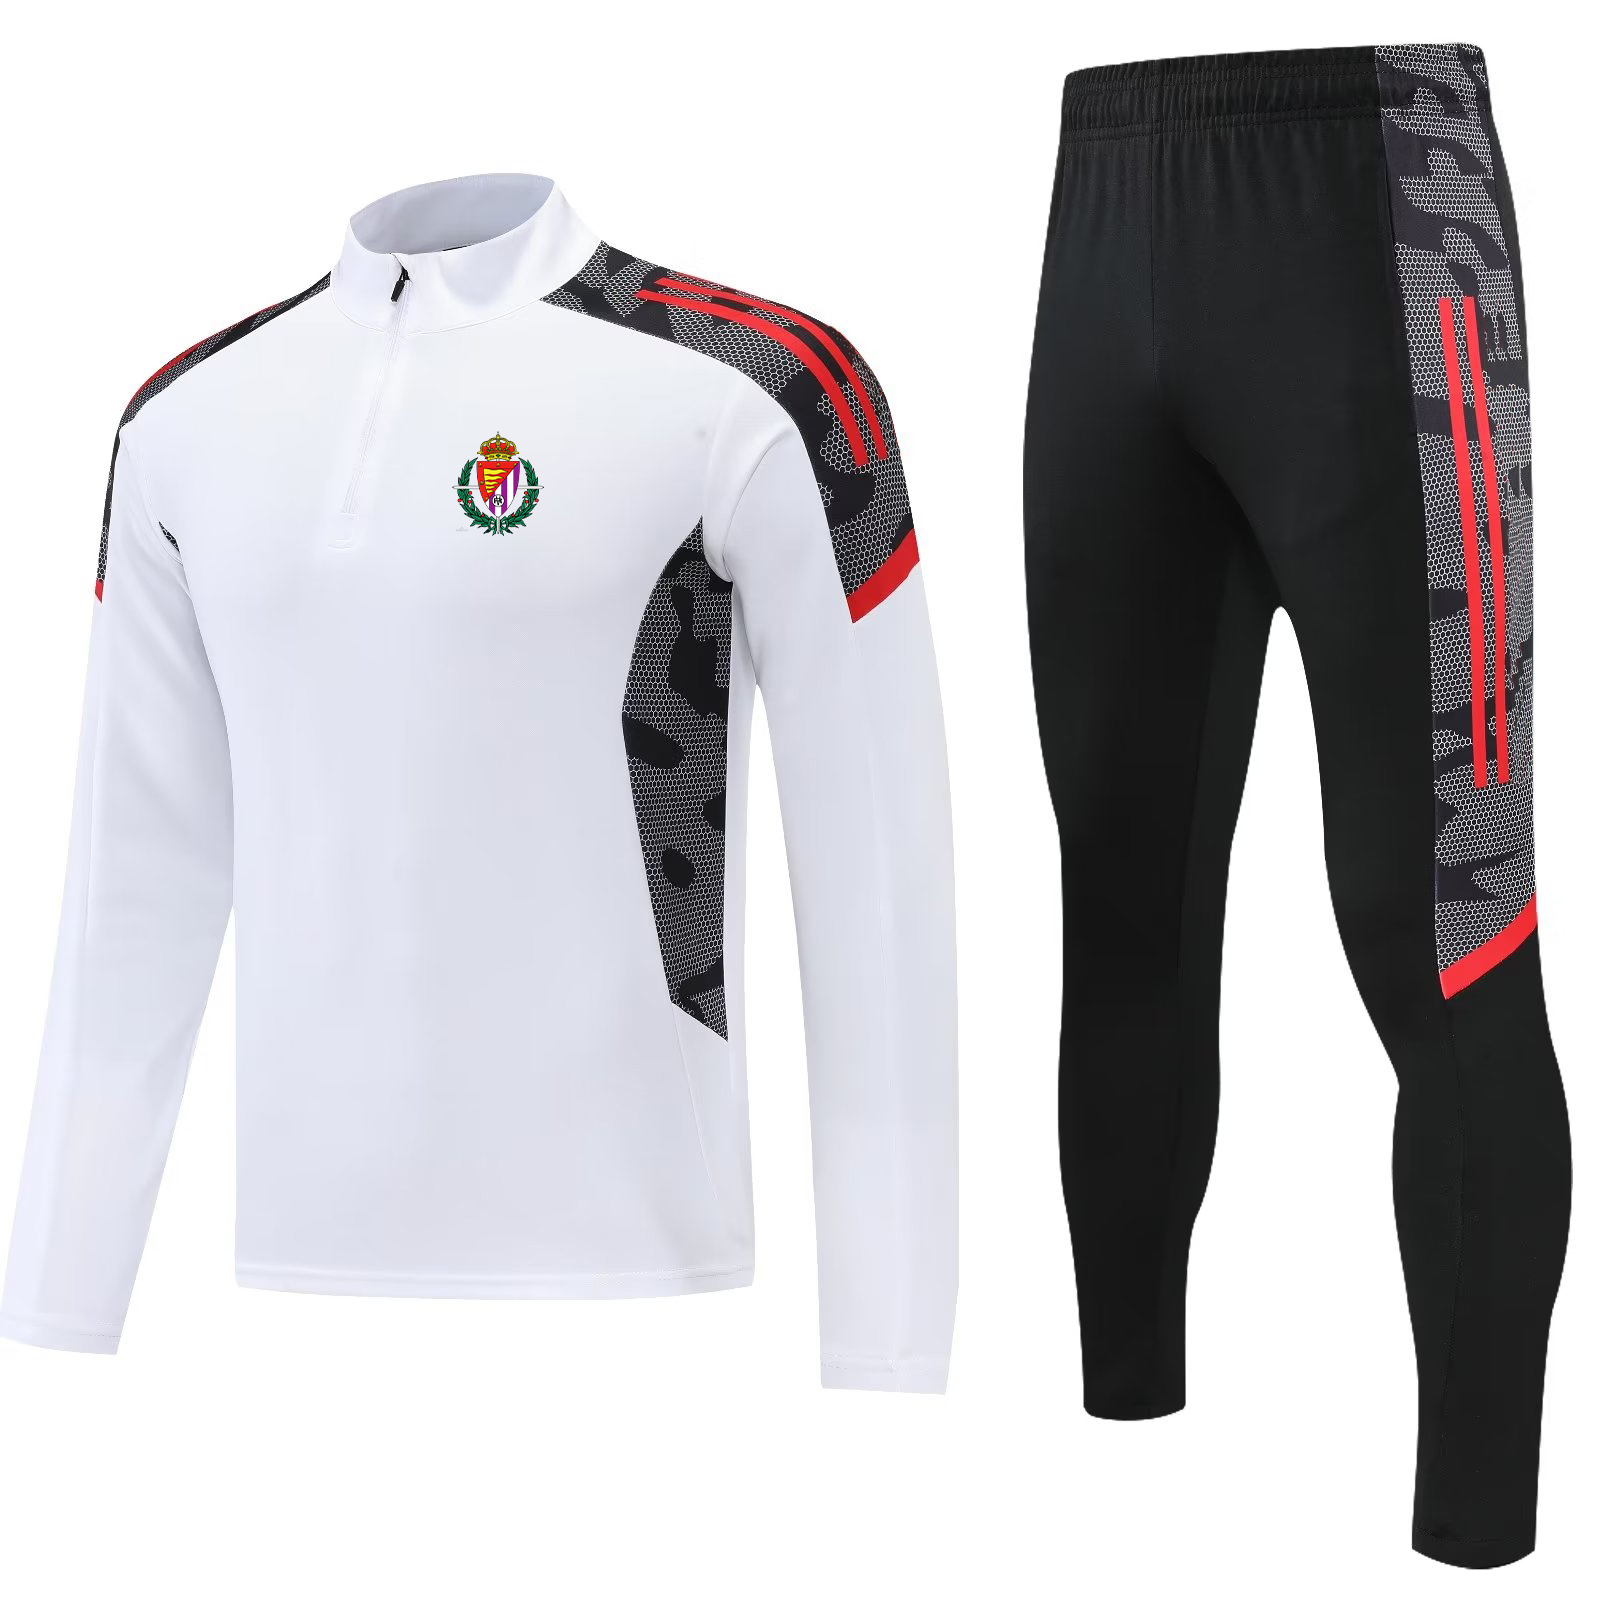 Real Valladolid Club de futbol męskie spodnie kurtka dresowa.